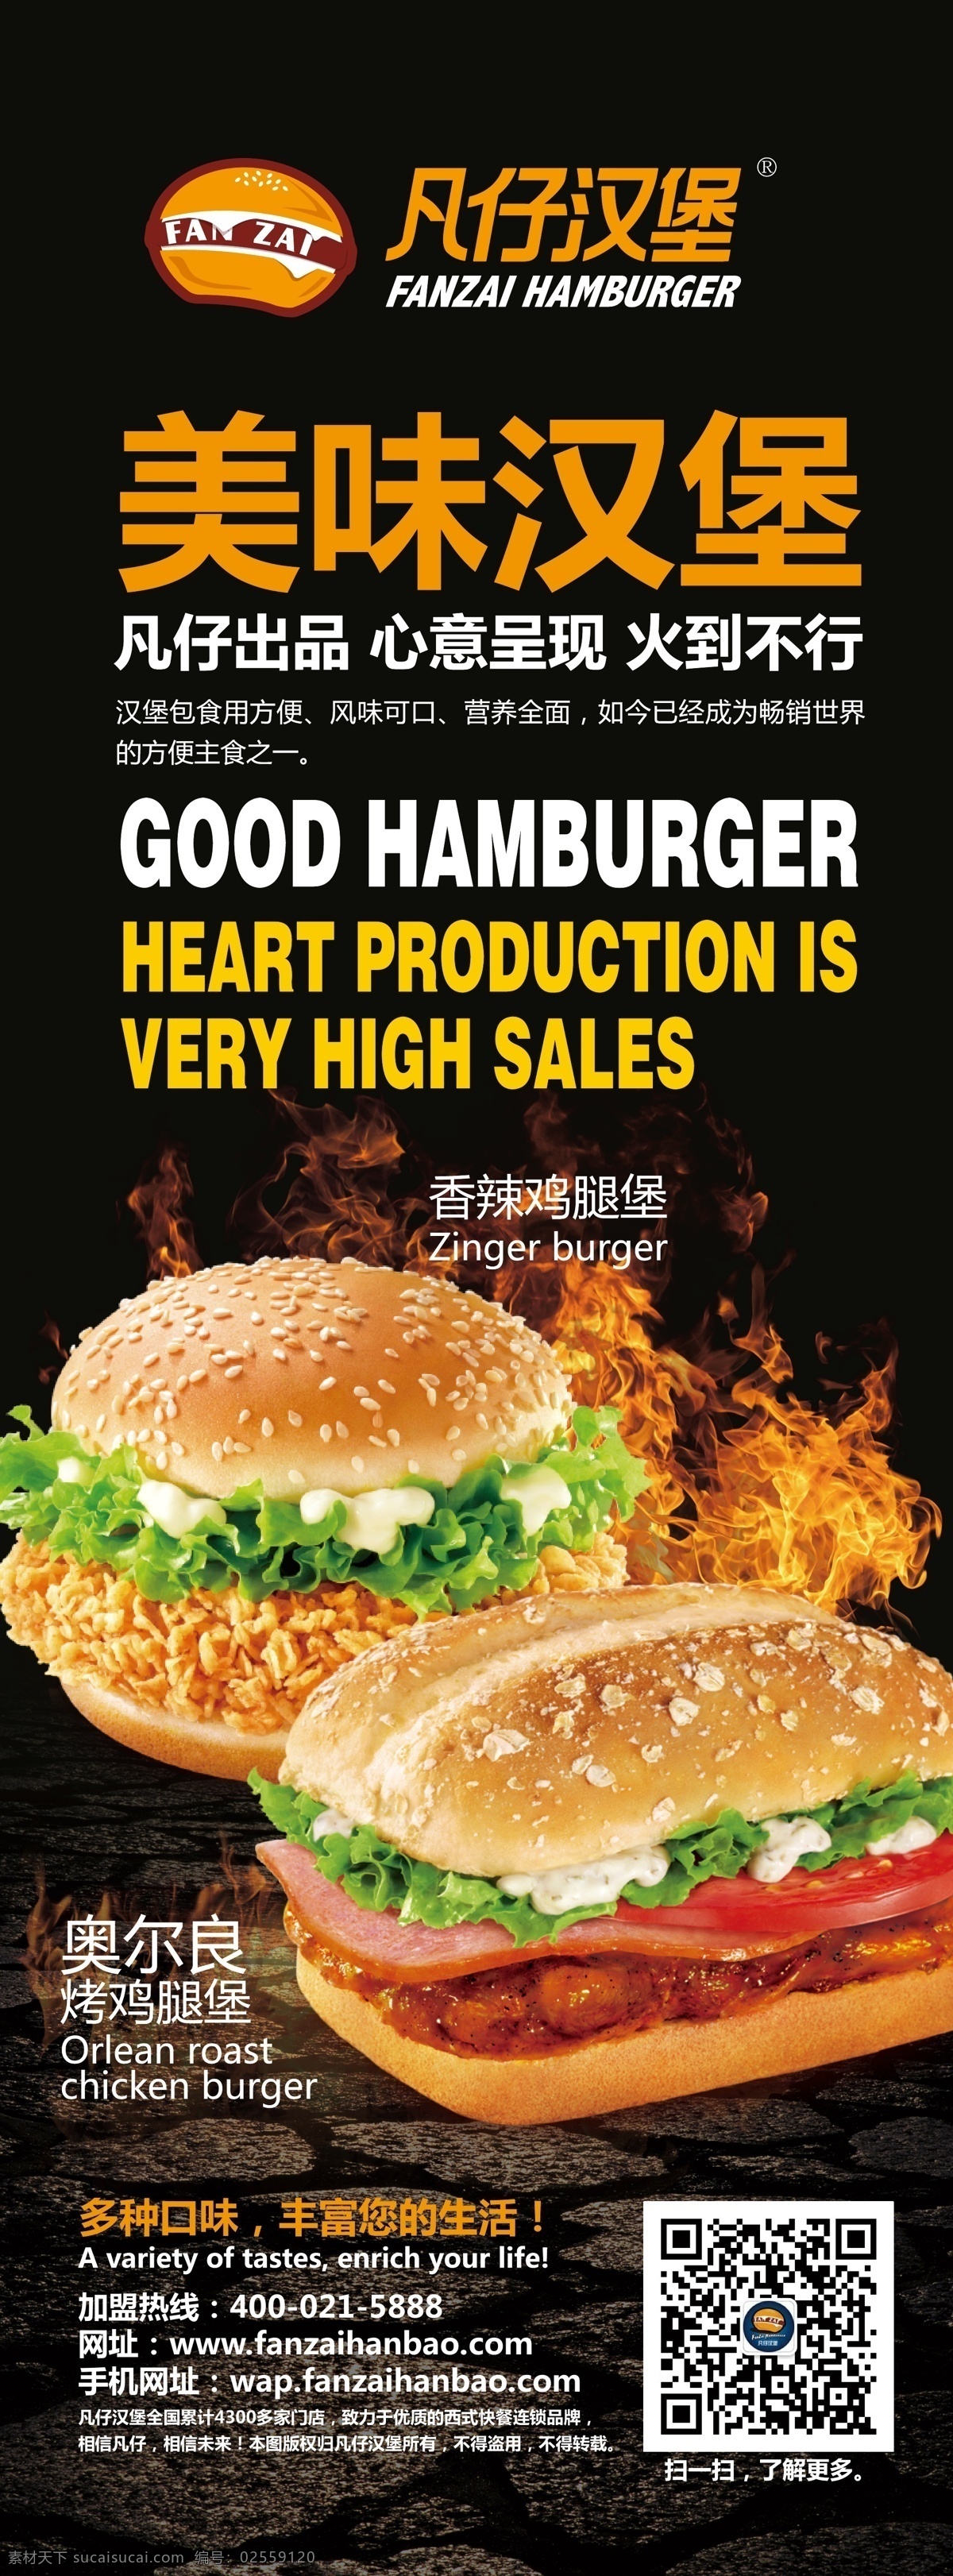 凡仔汉堡 宣传海报 薯条 鸡肉 香辣鸡腿堡 奥尔良 烤鸡腿堡 汉堡海报 汉堡挂画 汉堡墙画 汉堡套餐 汉堡灯箱 公司客户